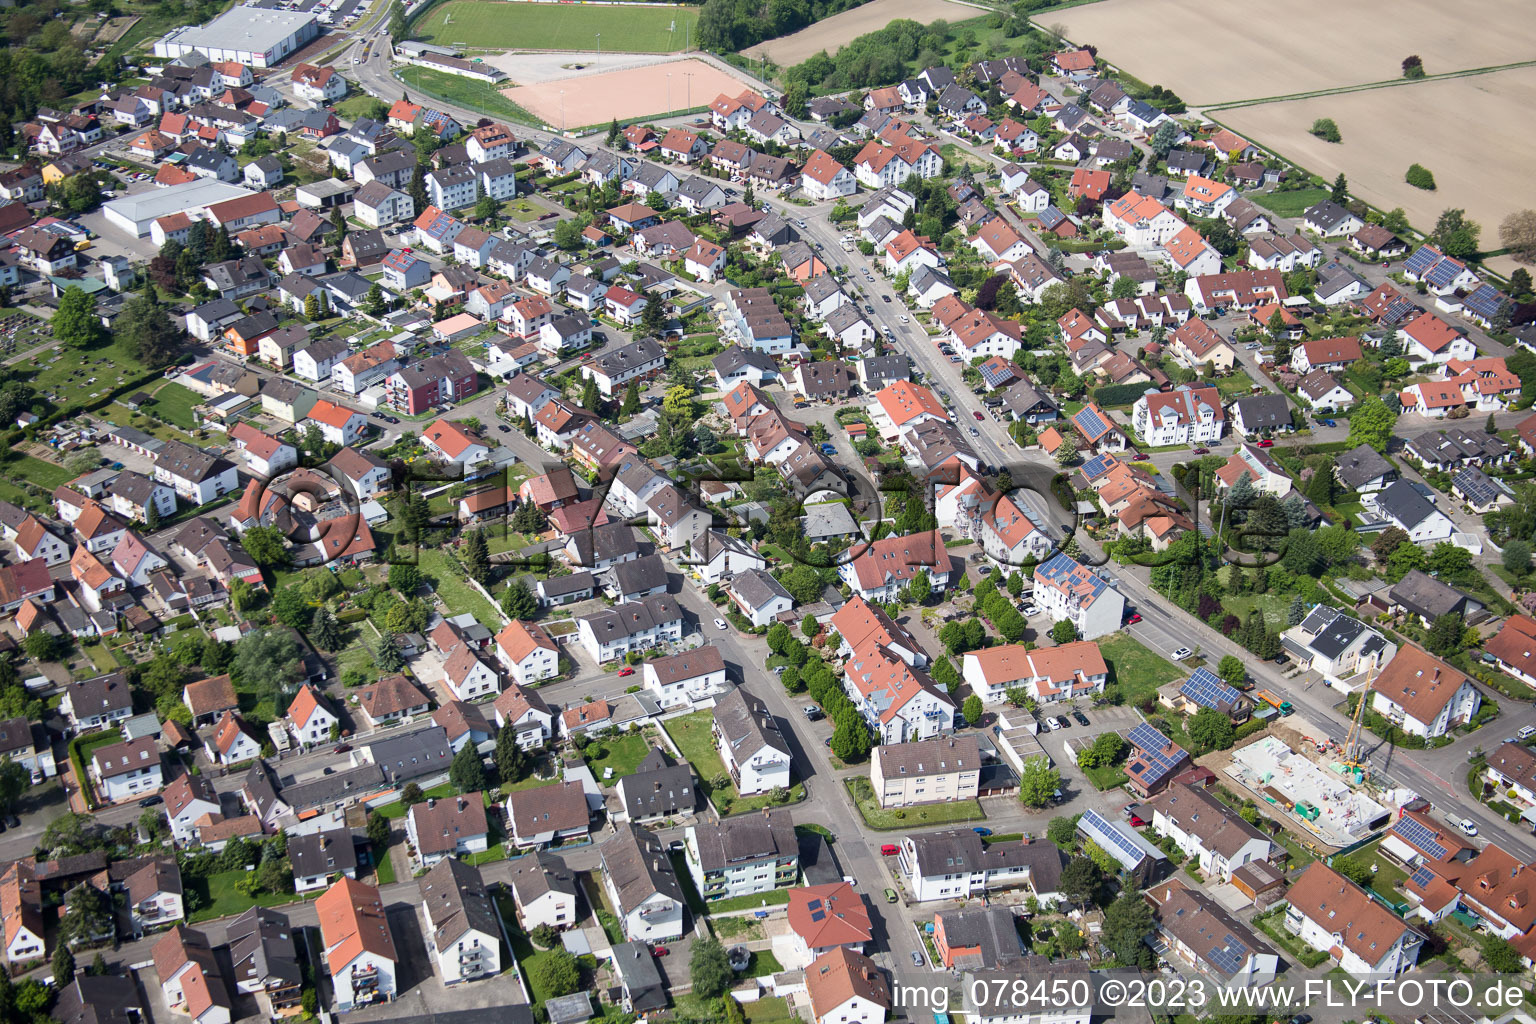 Hagenbach im Bundesland Rheinland-Pfalz, Deutschland von der Drohne aus gesehen